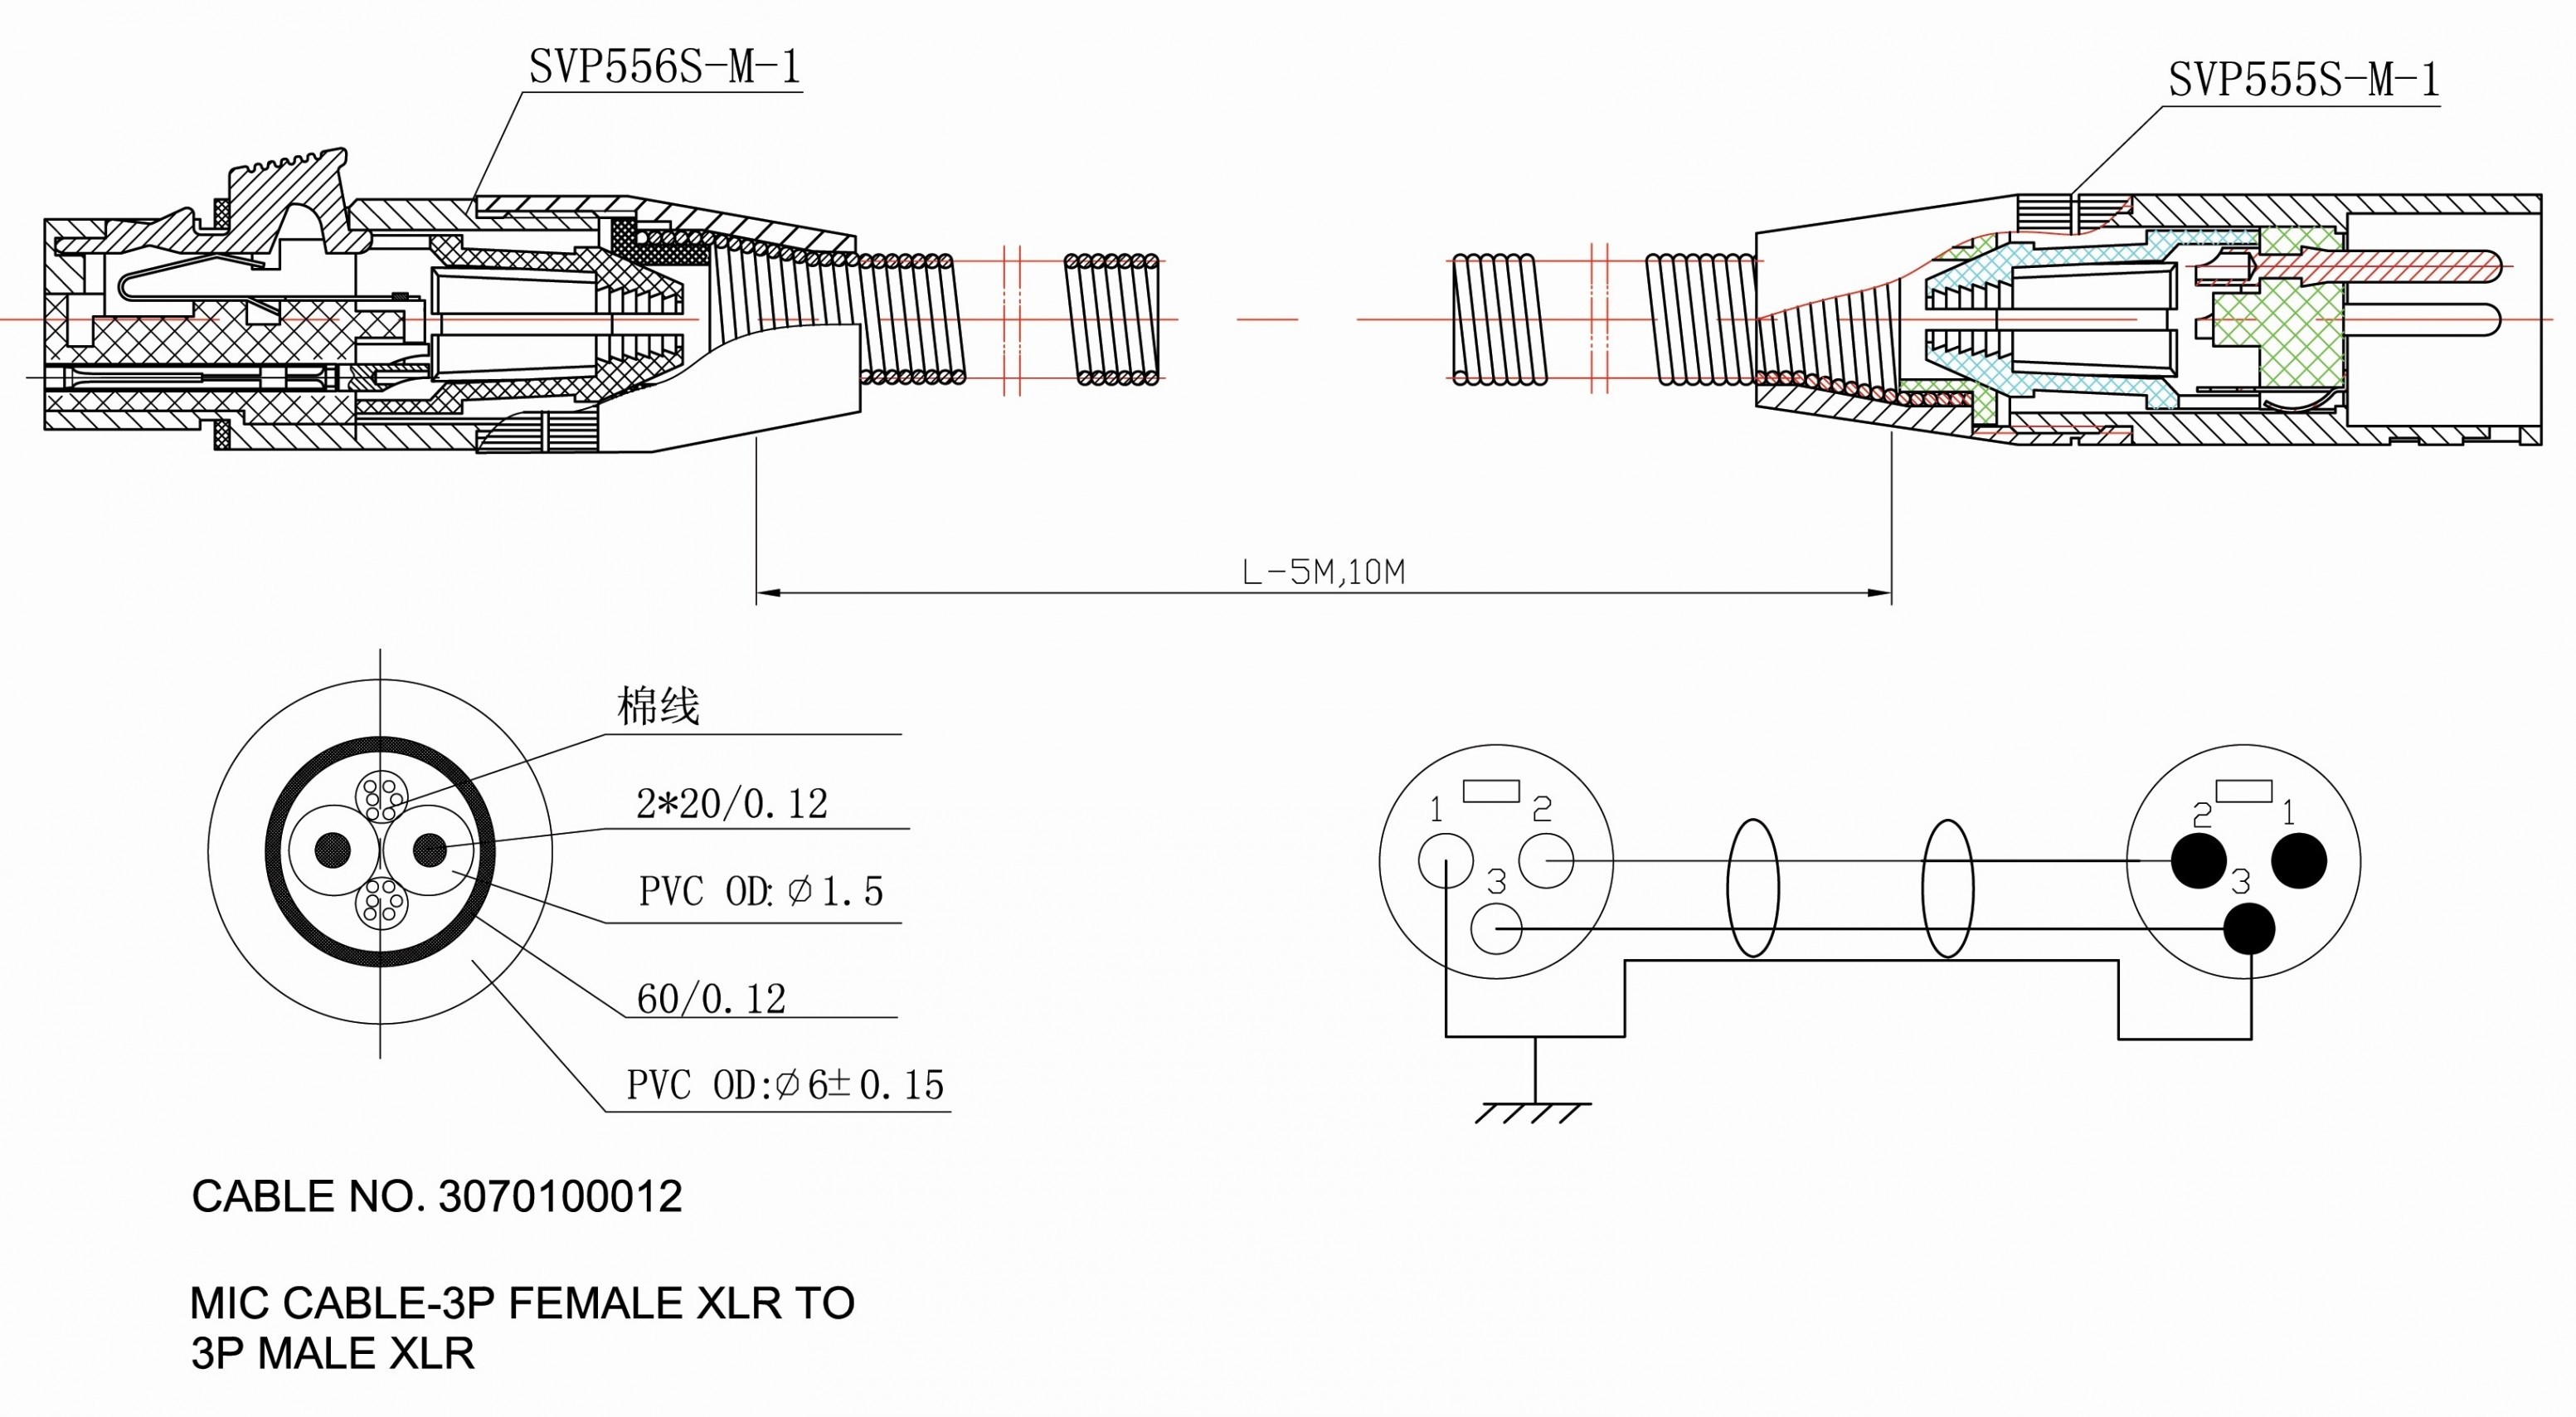 Cat5e Wiring Diagram – Cat 5e Wiring Diagram Inspirational Wiring Diagram Cat 5e Wiring